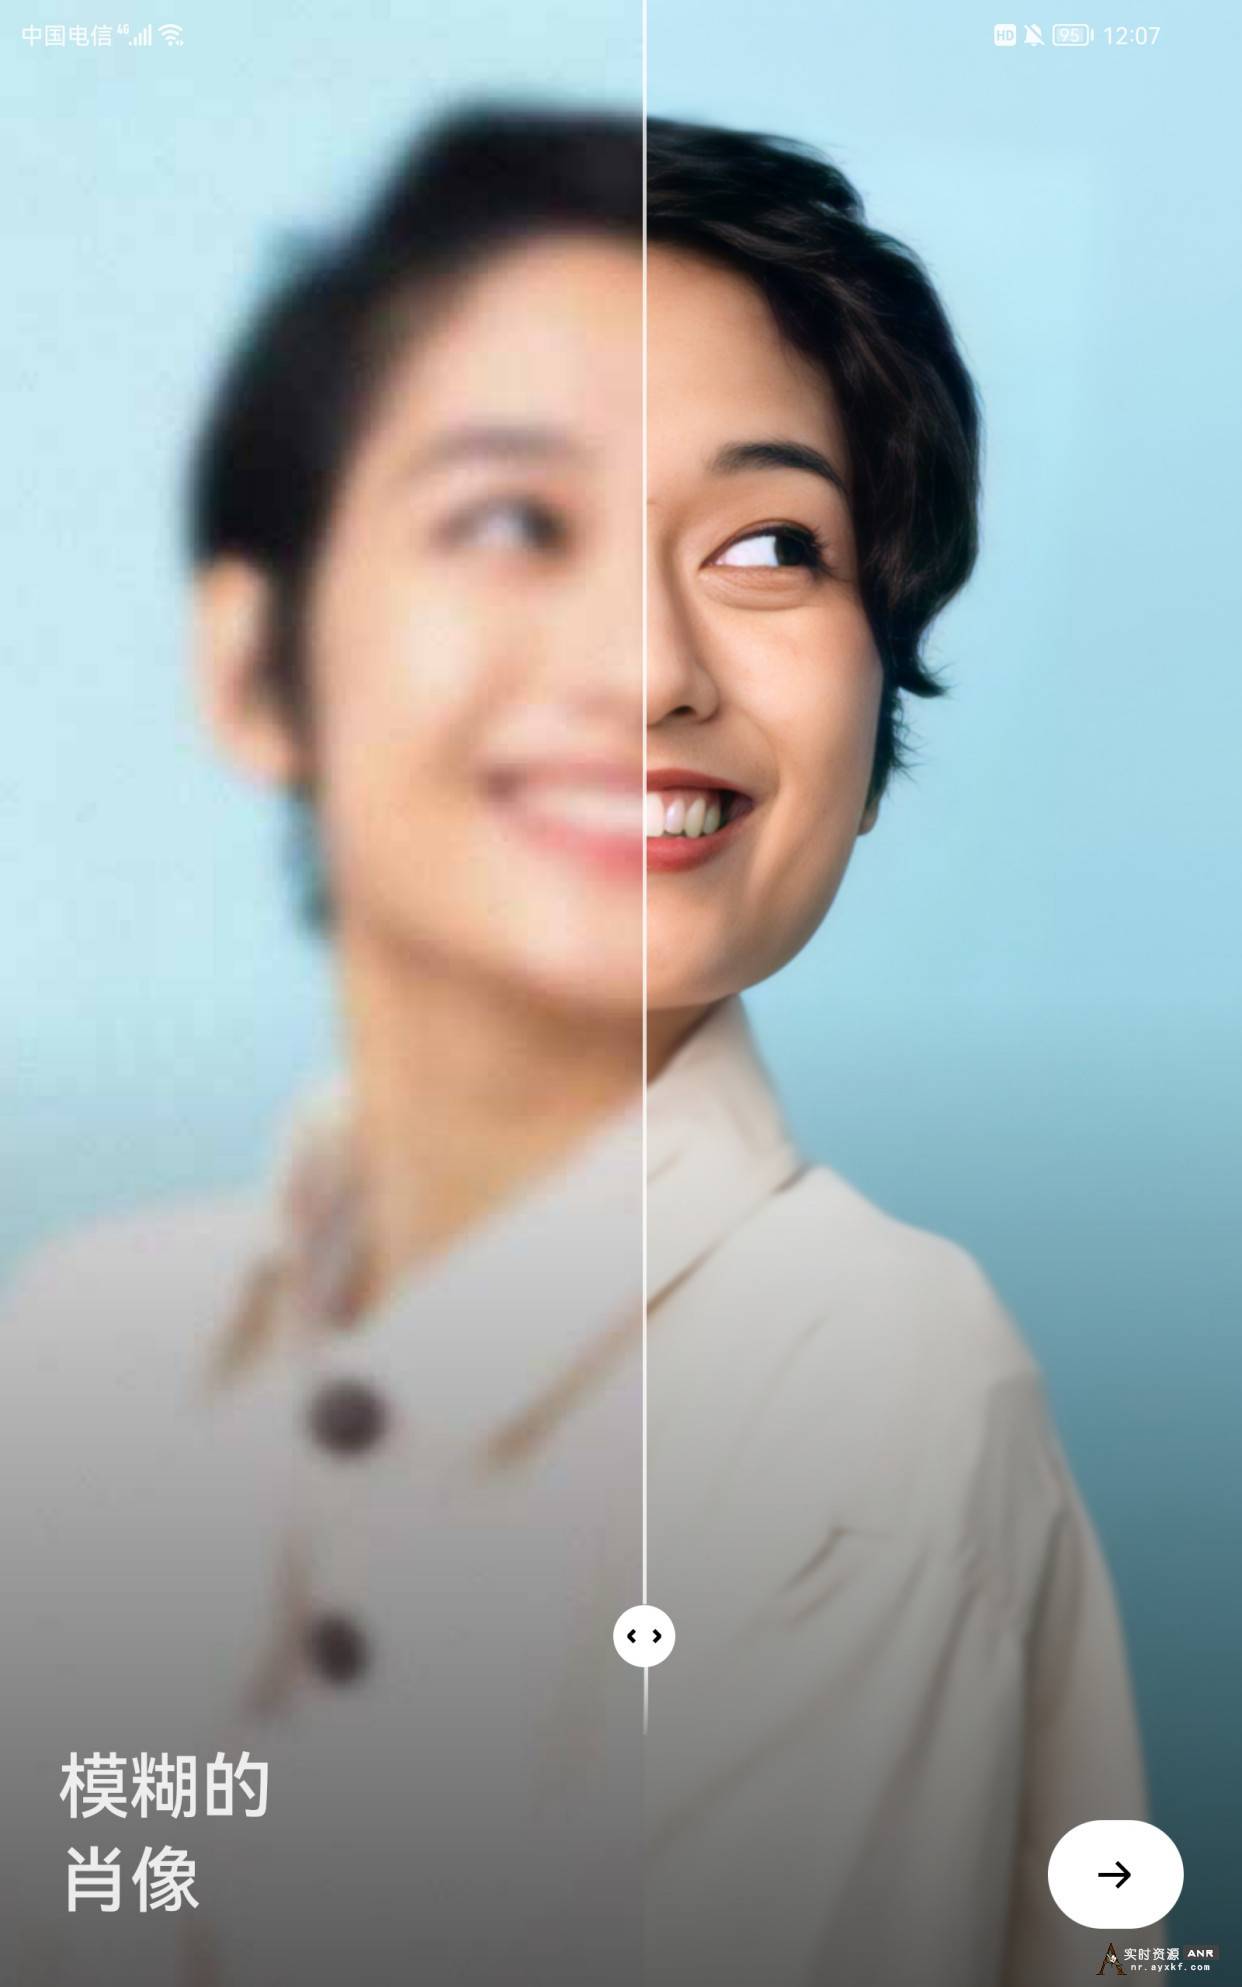 模糊人脸照片增强app--Remini--2.1.1